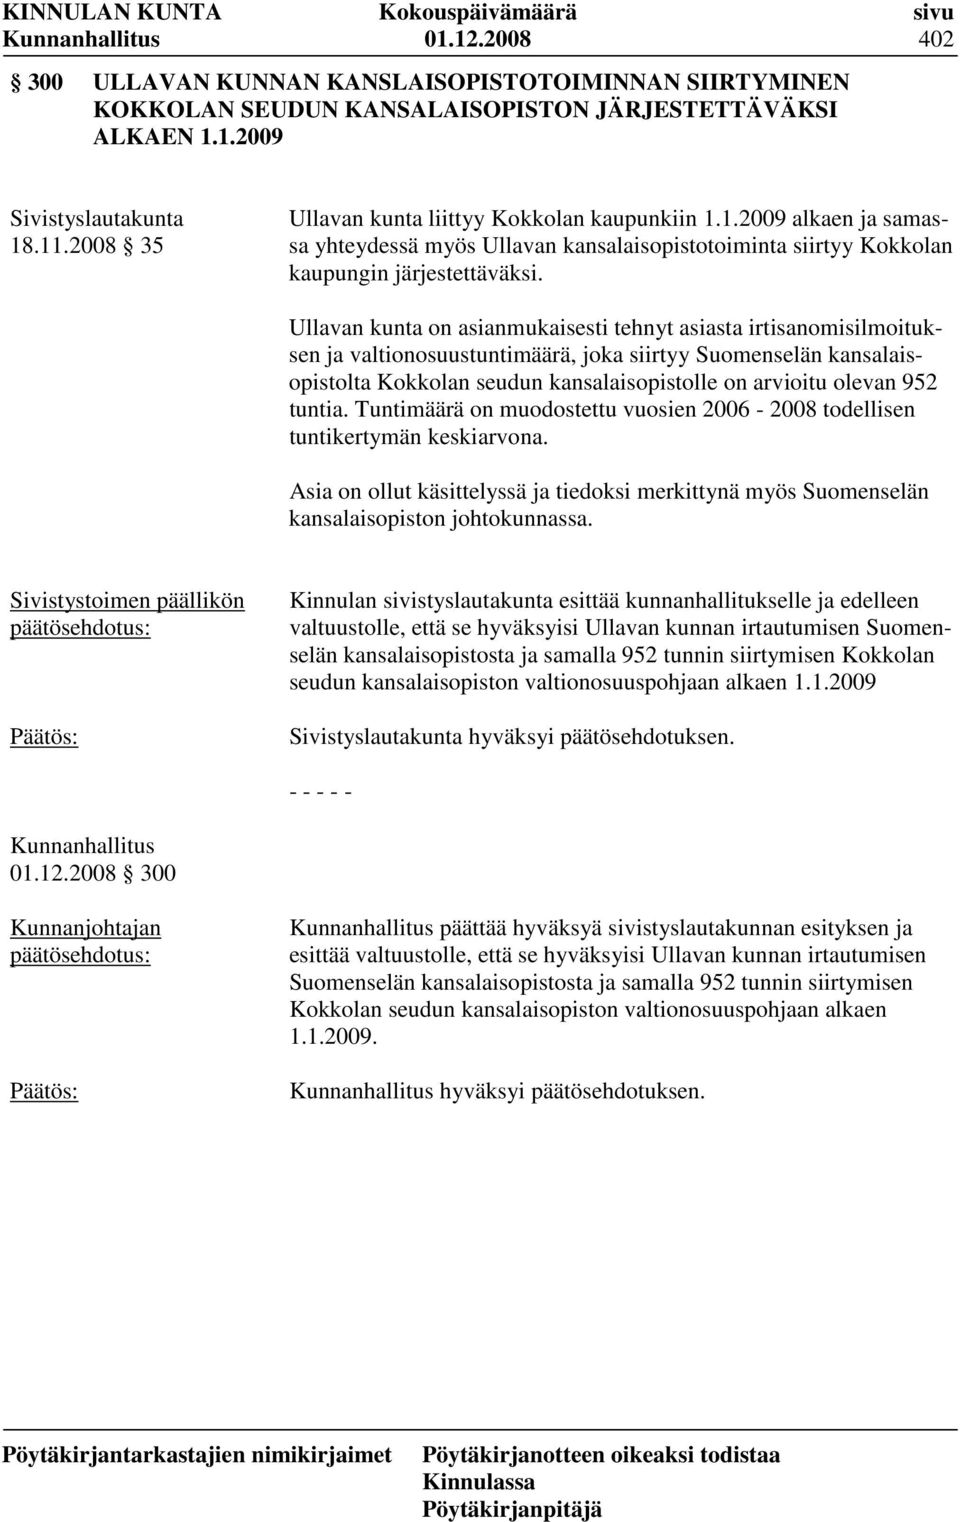 Ullavan kunta on asianmukaisesti tehnyt asiasta irtisanomisilmoituksen ja valtionosuustuntimäärä, joka siirtyy Suomenselän kansalaisopistolta Kokkolan seudun kansalaisopistolle on arvioitu olevan 952